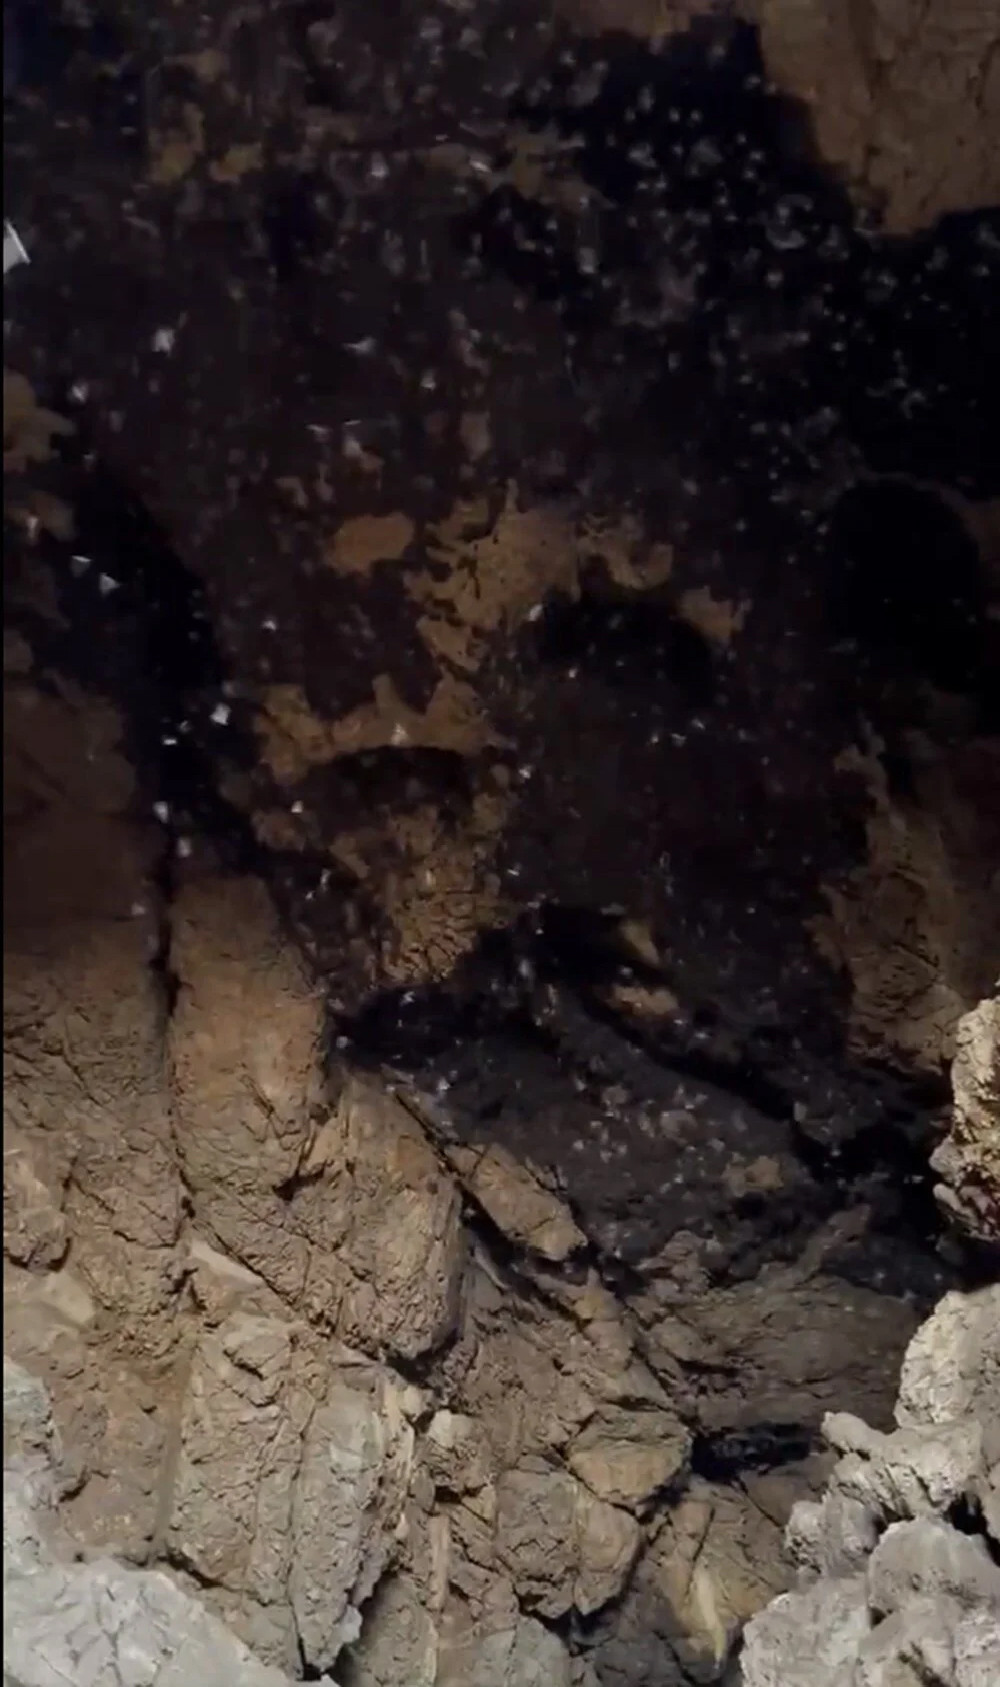 İngiliz virolog: Kovid-19'un kaynağı bu mağara!